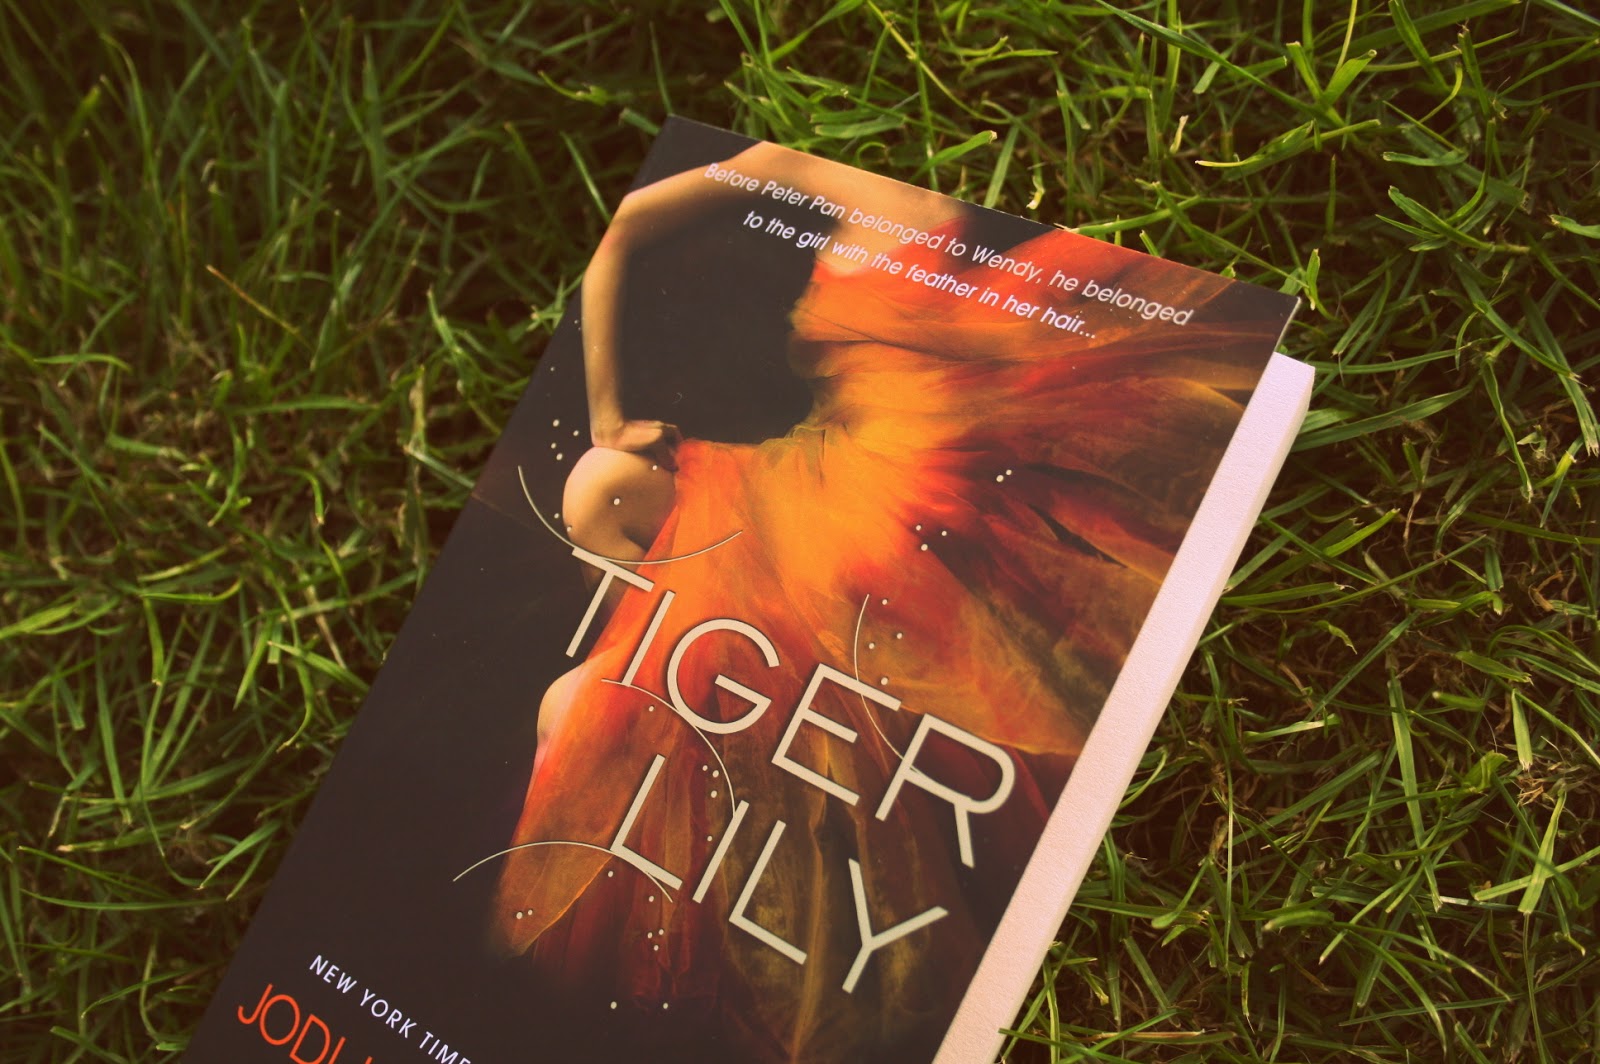 Tiger Lily af Jodi Lynn Anderson